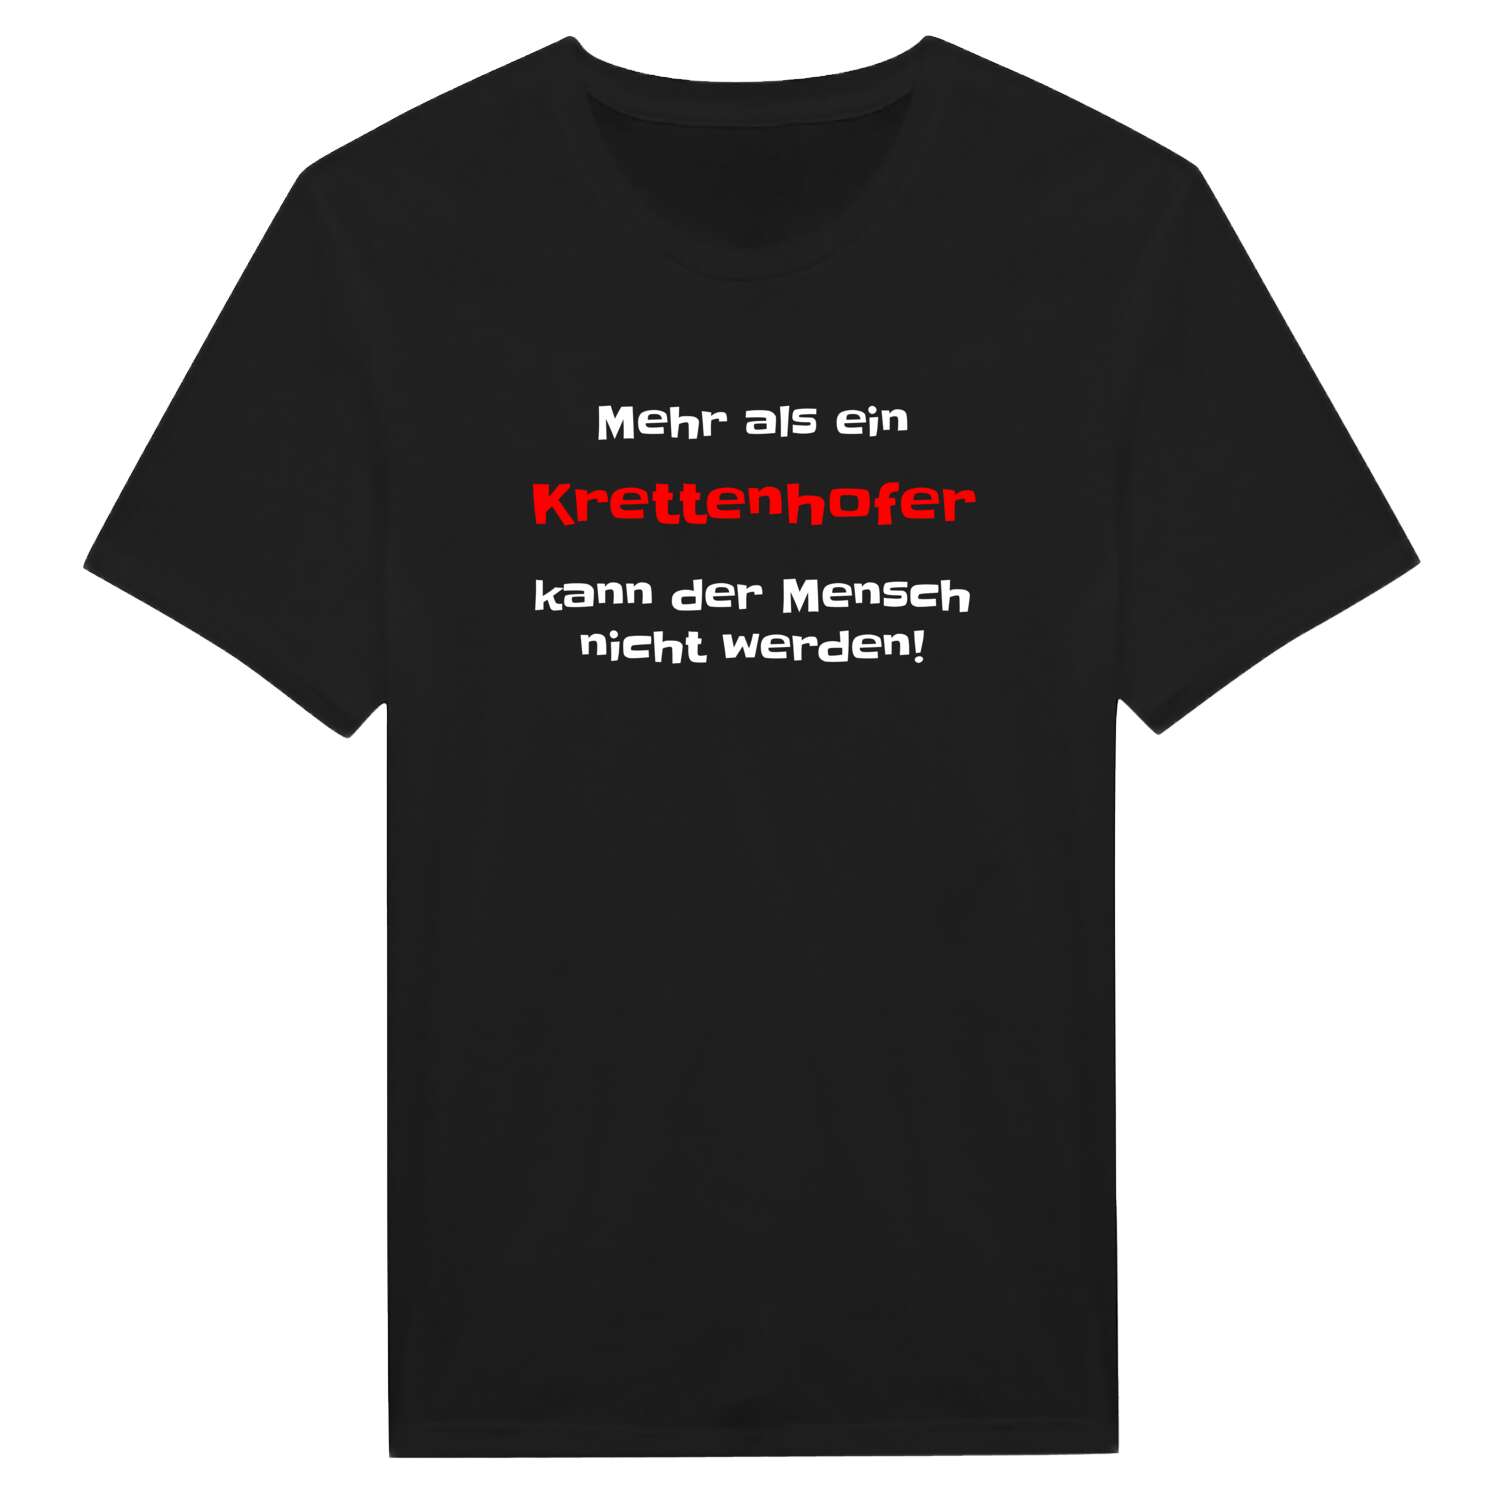 Krettenhof T-Shirt »Mehr als ein«